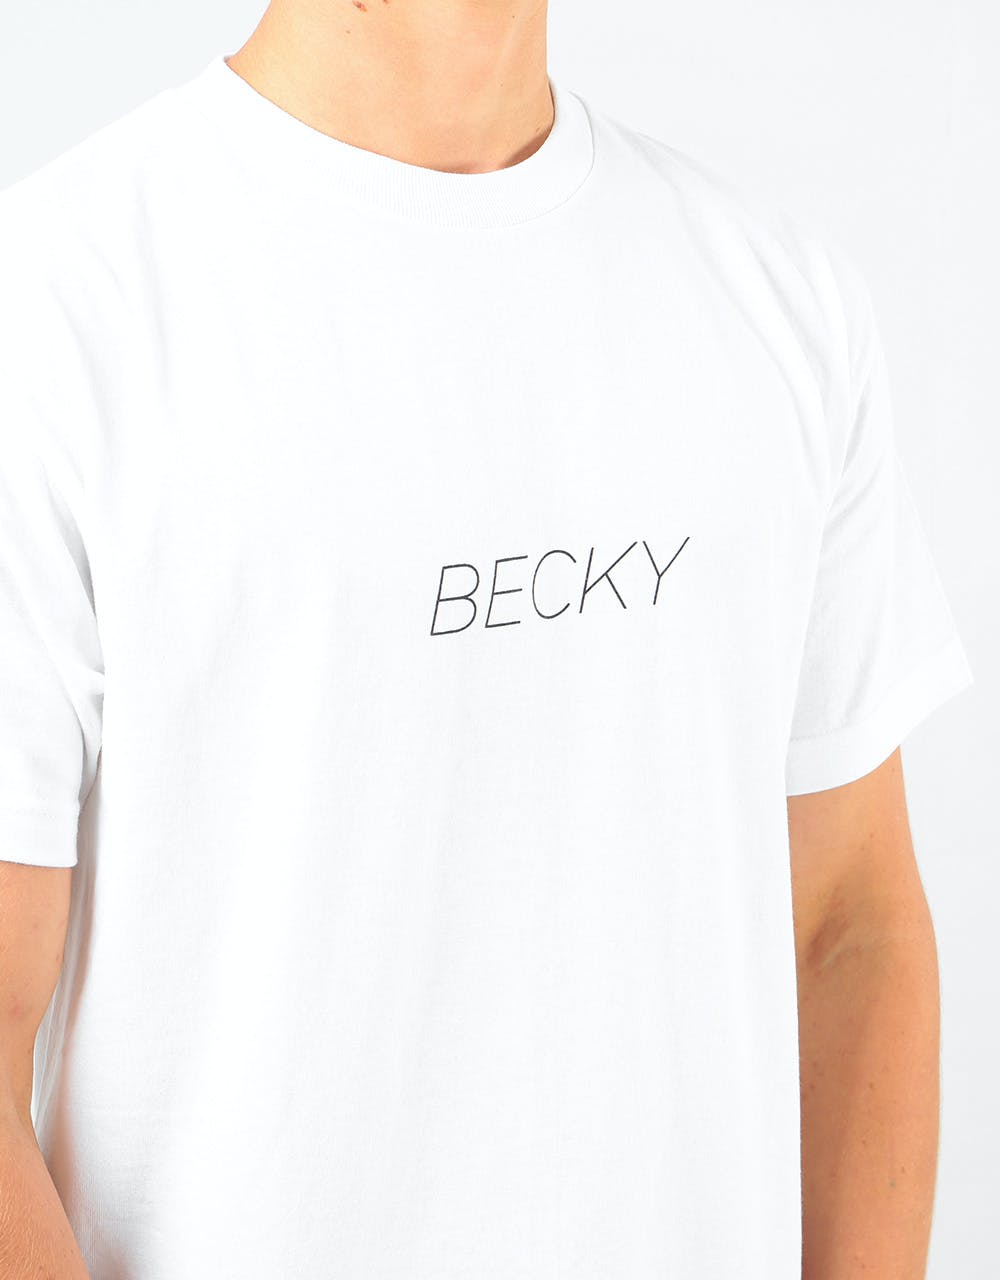 Becky Factory Legs T-Shirt - White